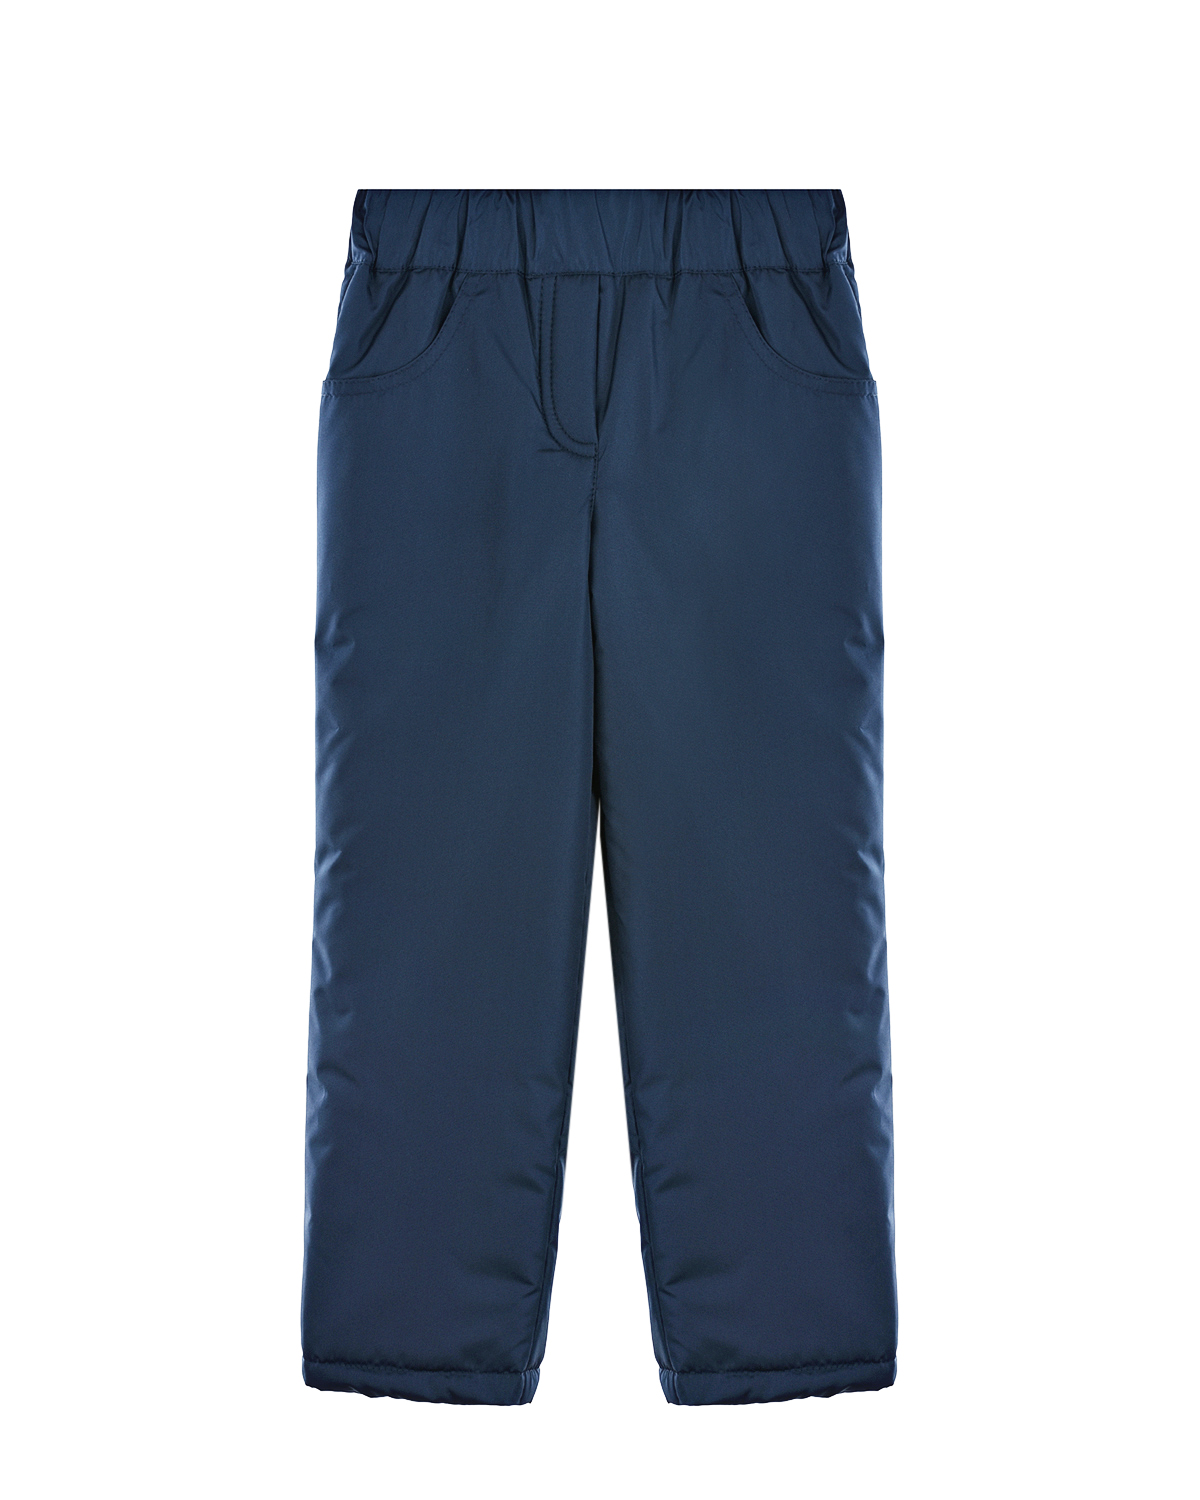 Синие утепленные брюки Dan Maralex детские, размер 86, цвет синий - фото 1